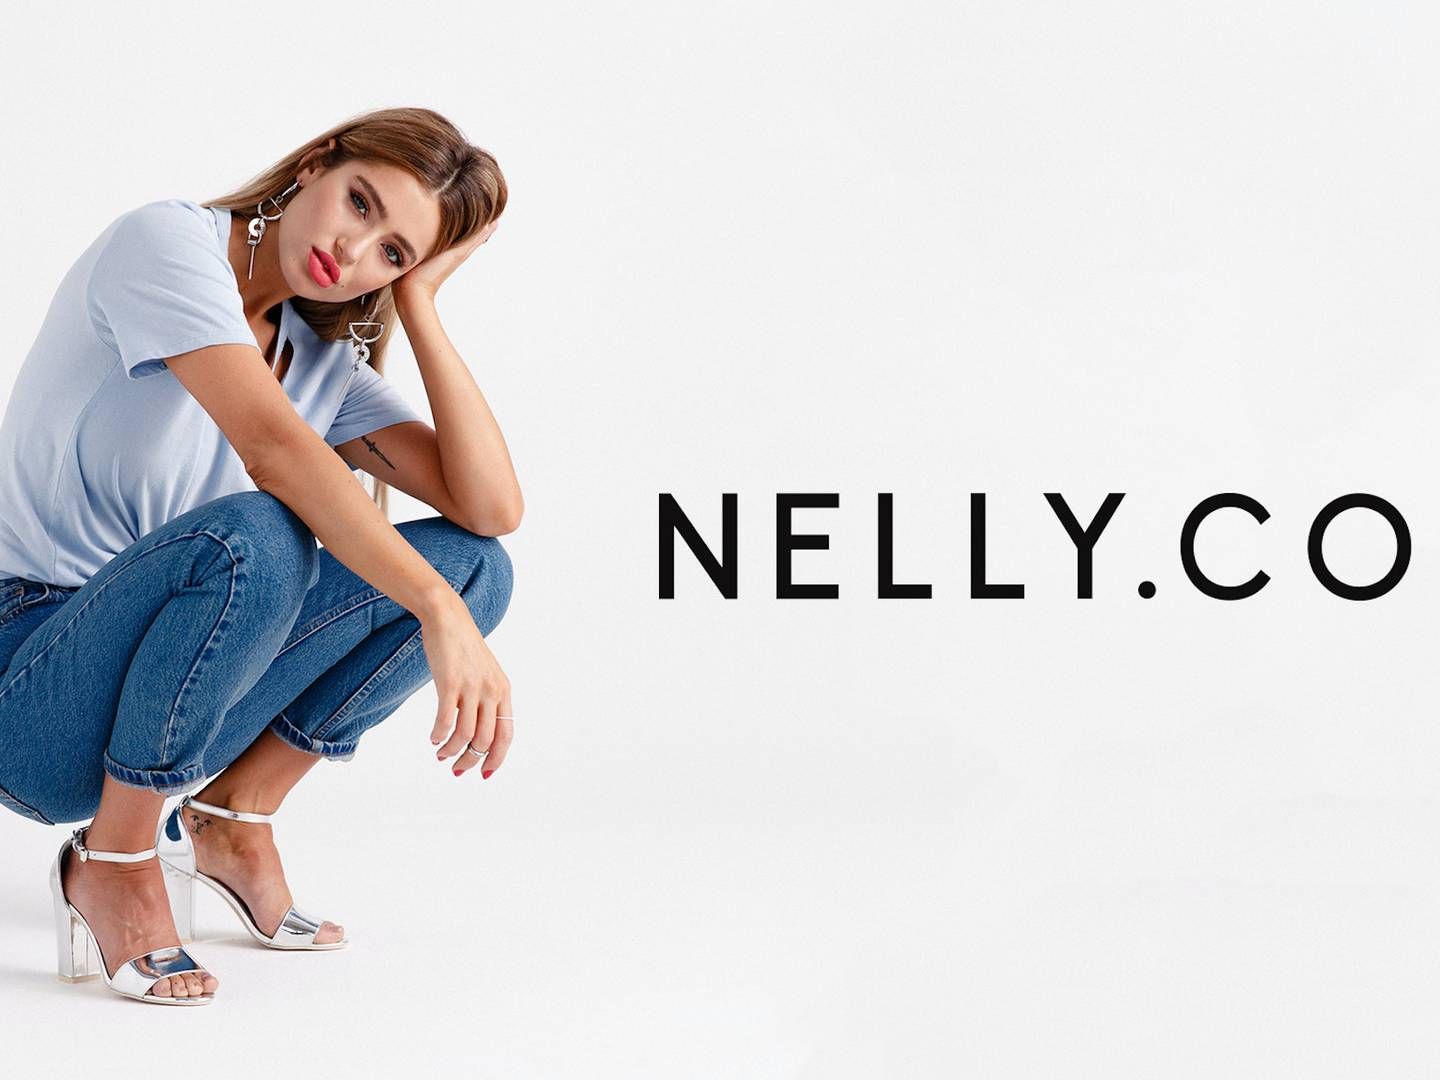 Nelly.com blev lanceret i 2004 og er i dag til stede i flere europæiske lande. | Foto: PR/Nelly,com